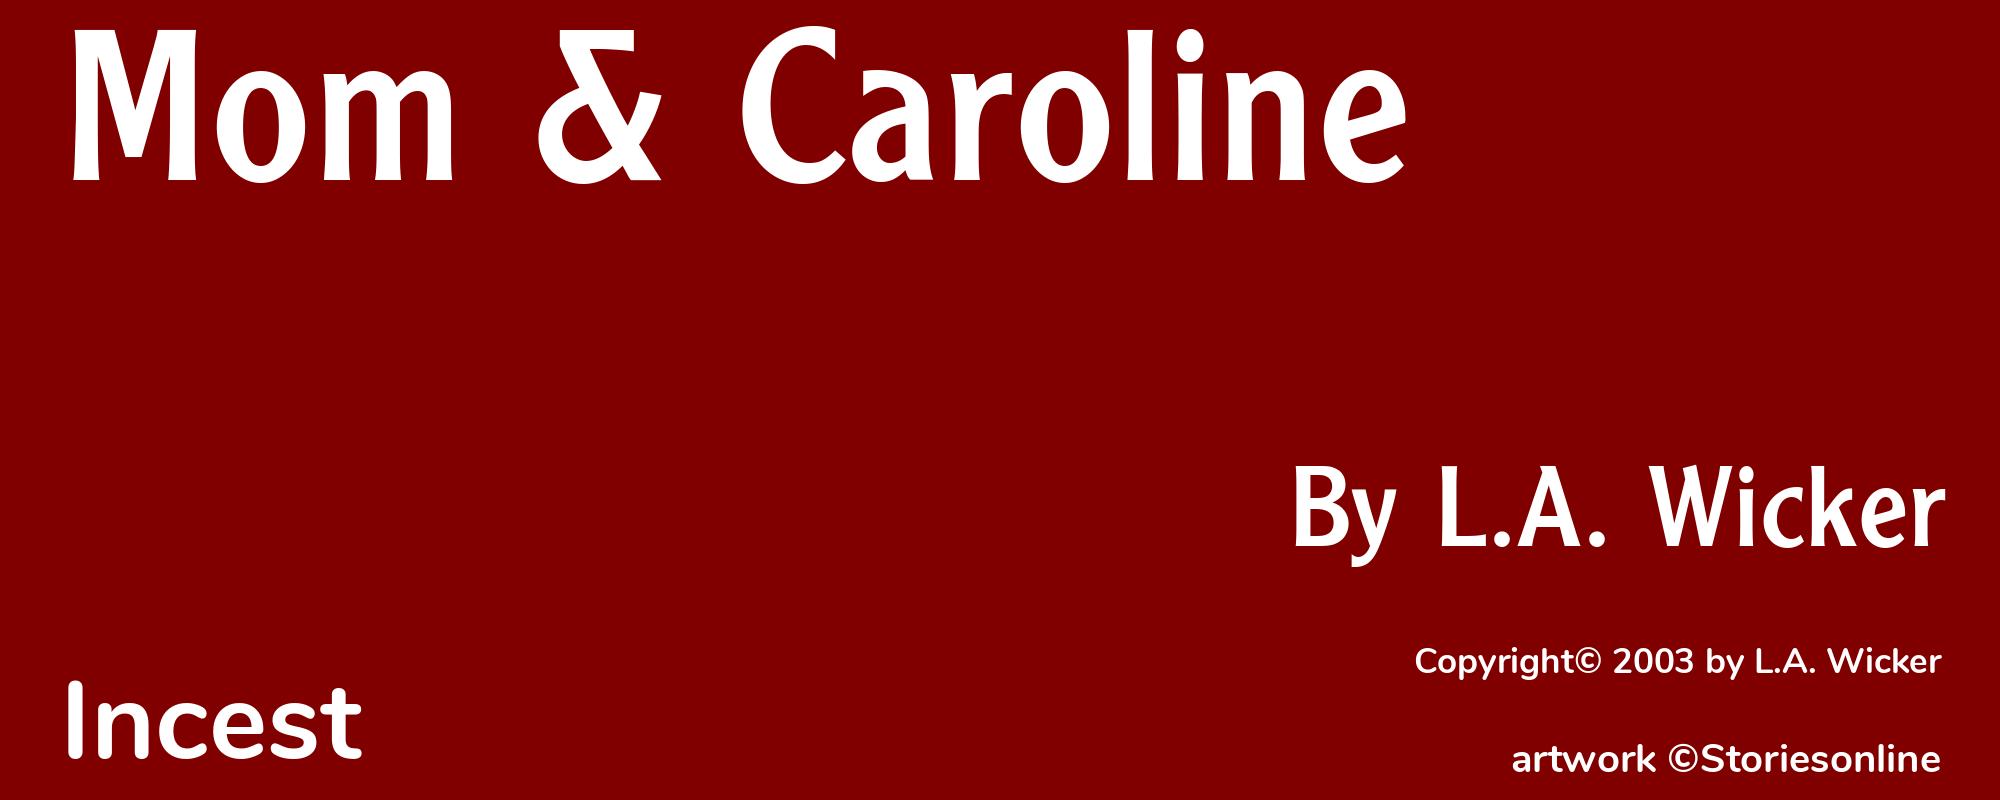 Mom & Caroline - Cover